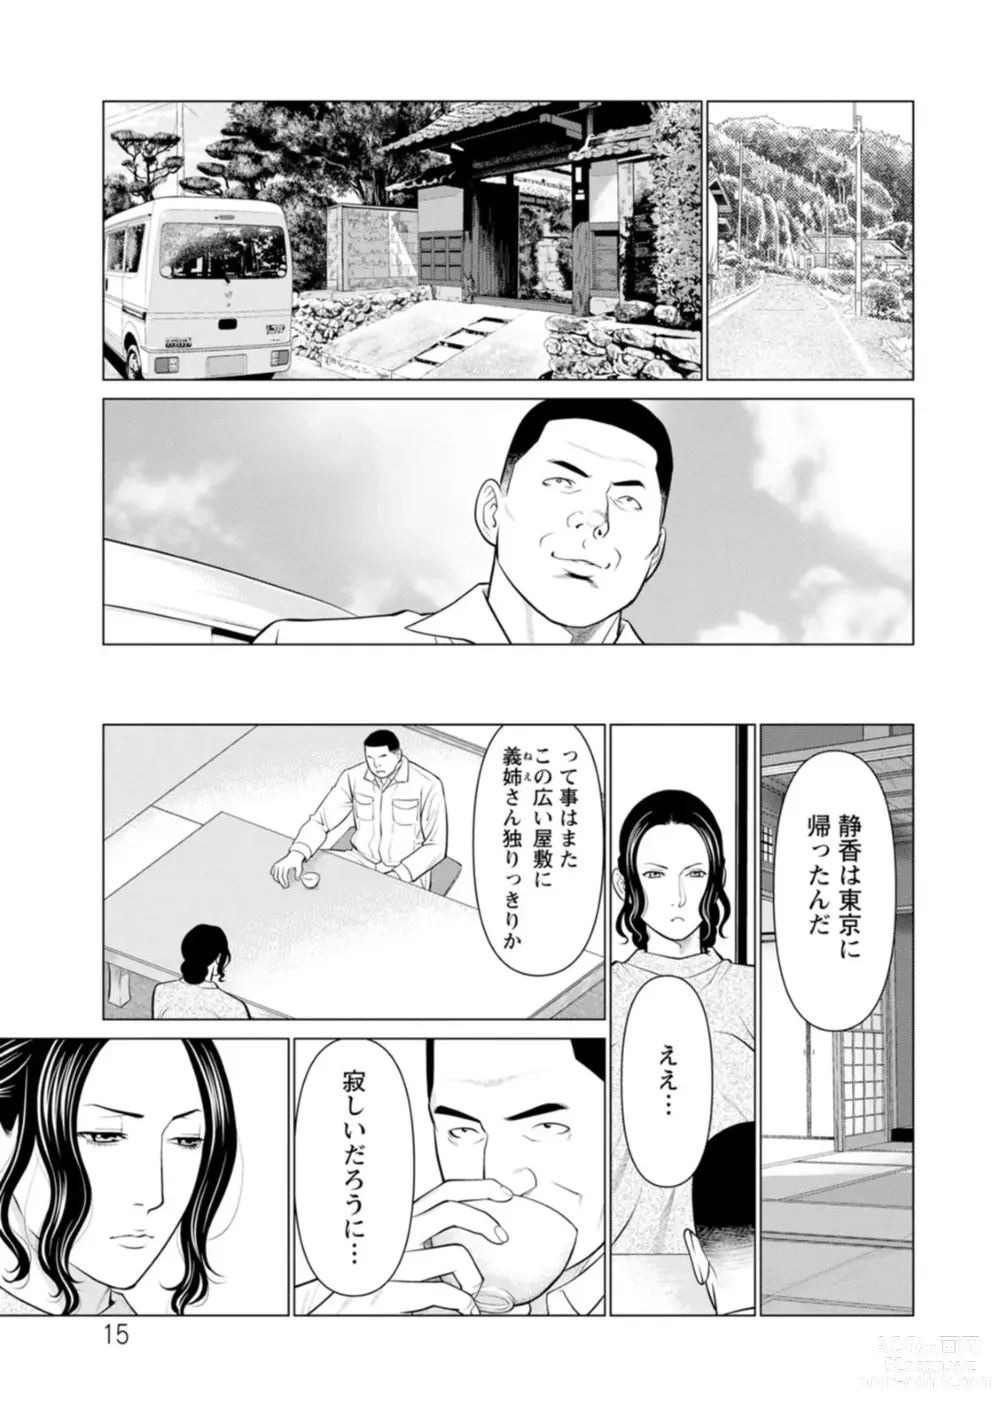 Page 15 of manga Rengoku no Sono - The Garden of Purgatory 2